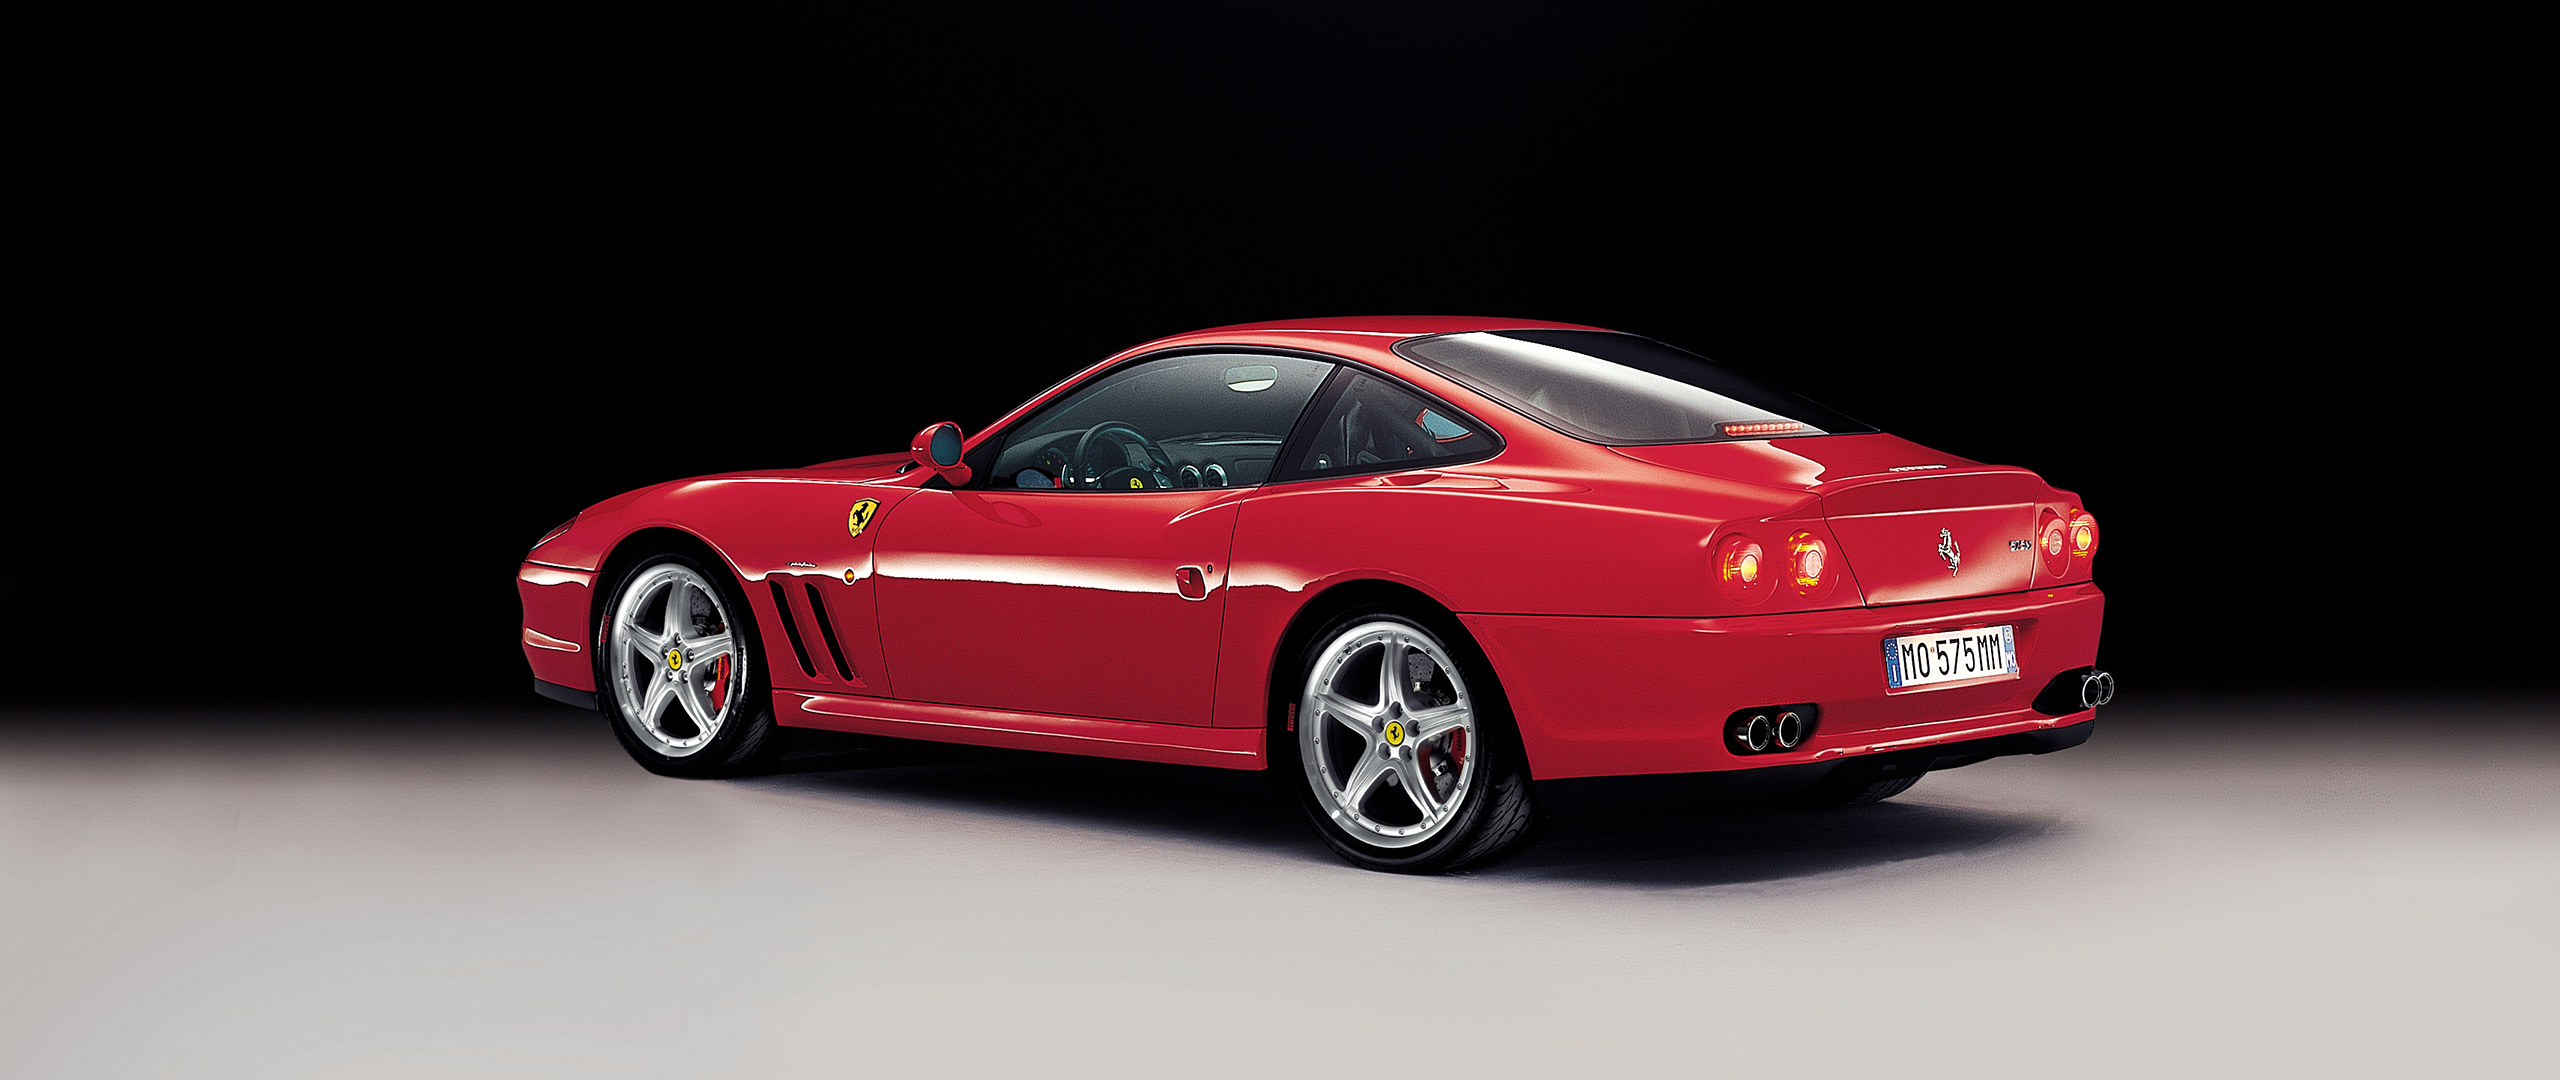  2002 Ferrari 575M Maranello Wallpaper.